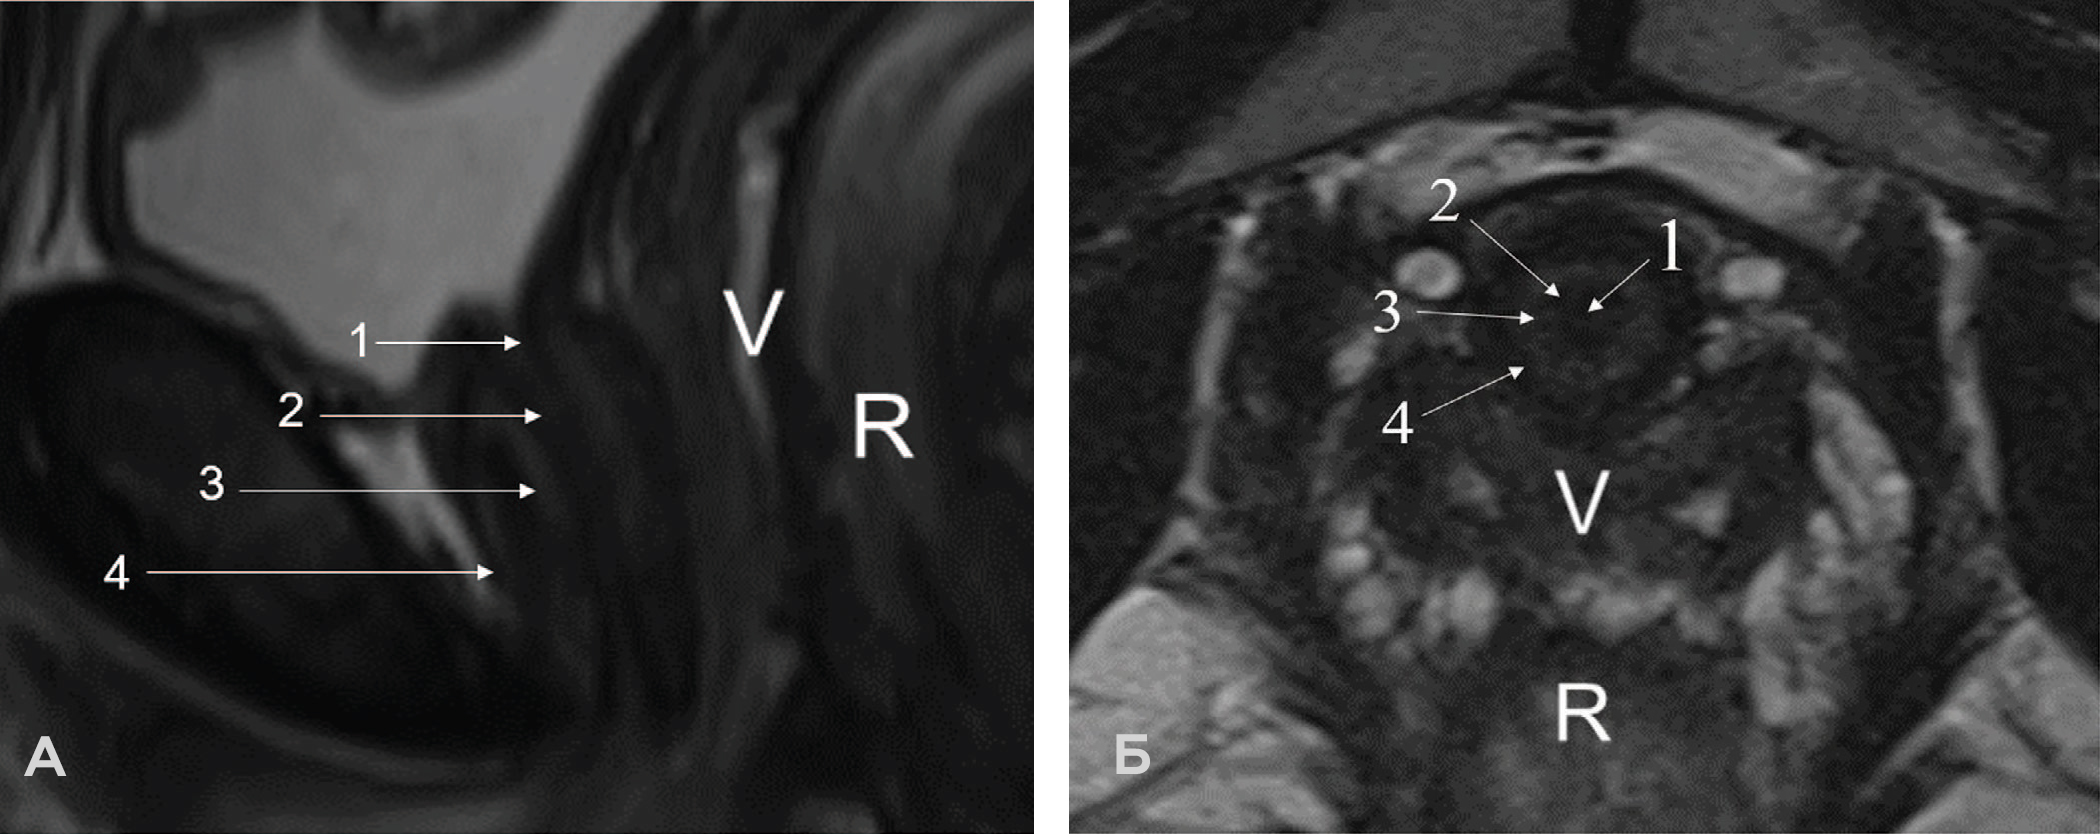 Зональная анатомия нормальной женской уретры на МРТ